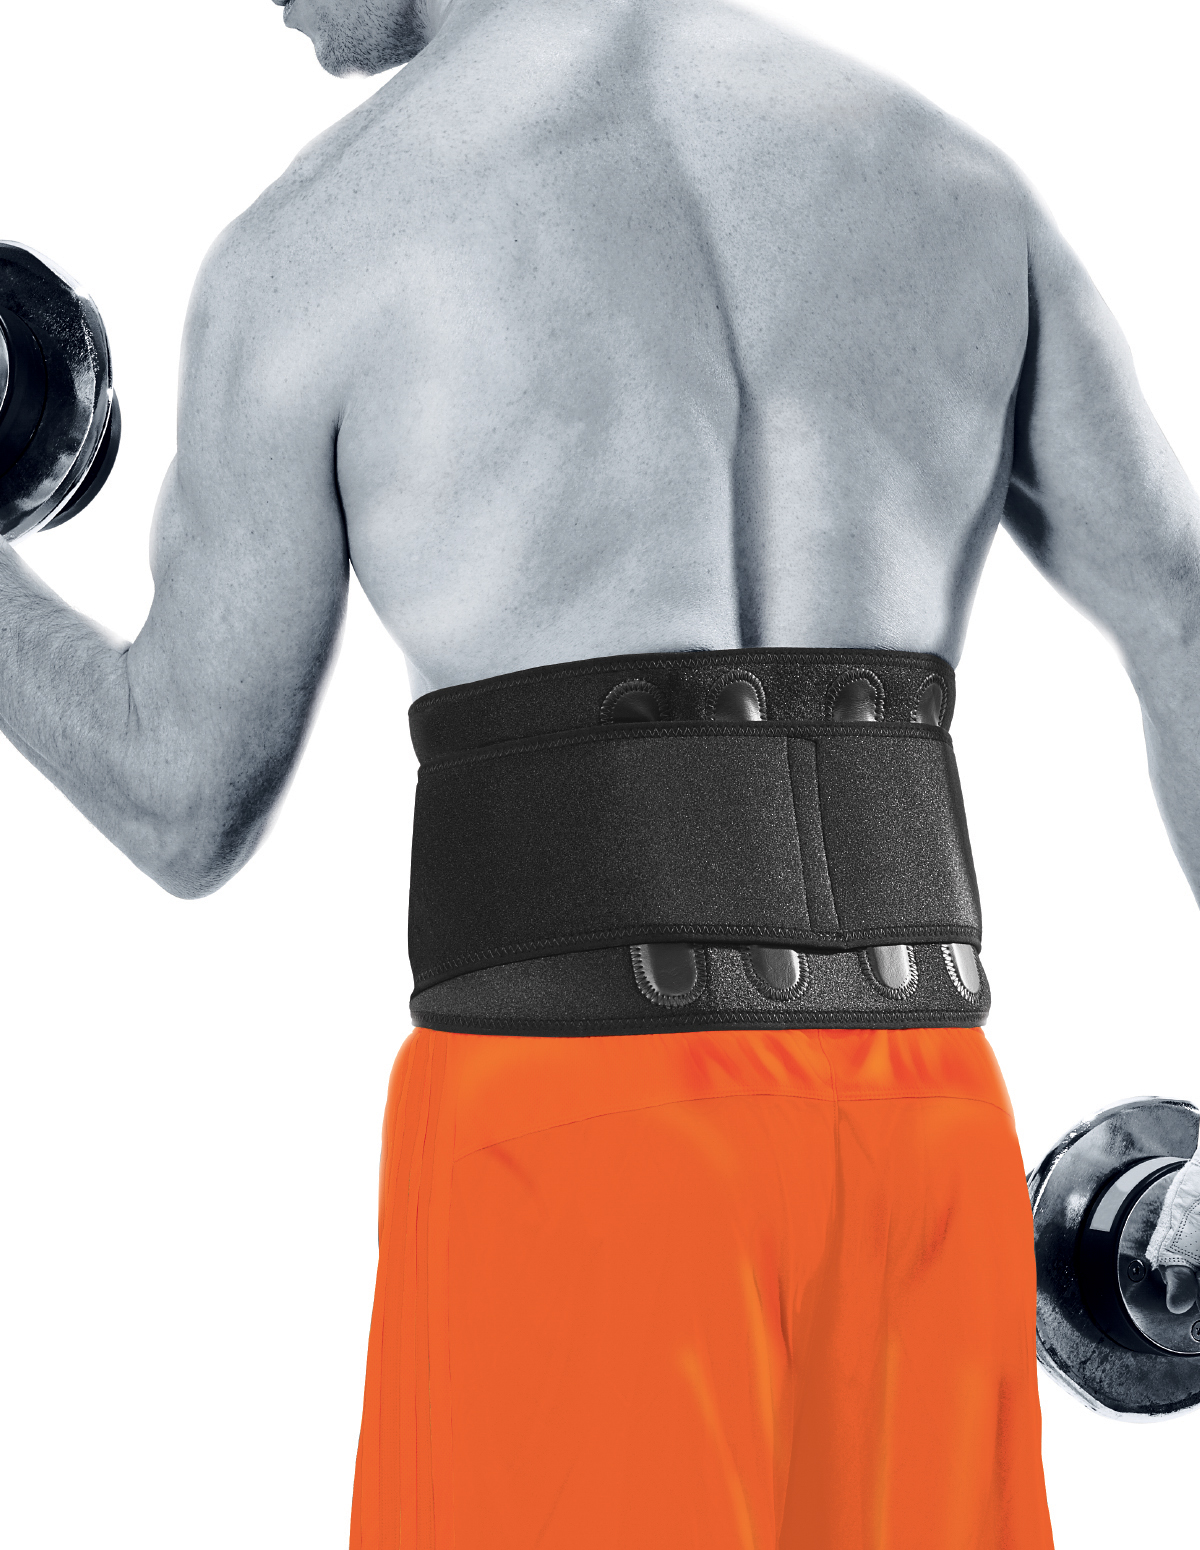 Back Support Belt By For Men Adjustable Velcro Sports Plastic Belt